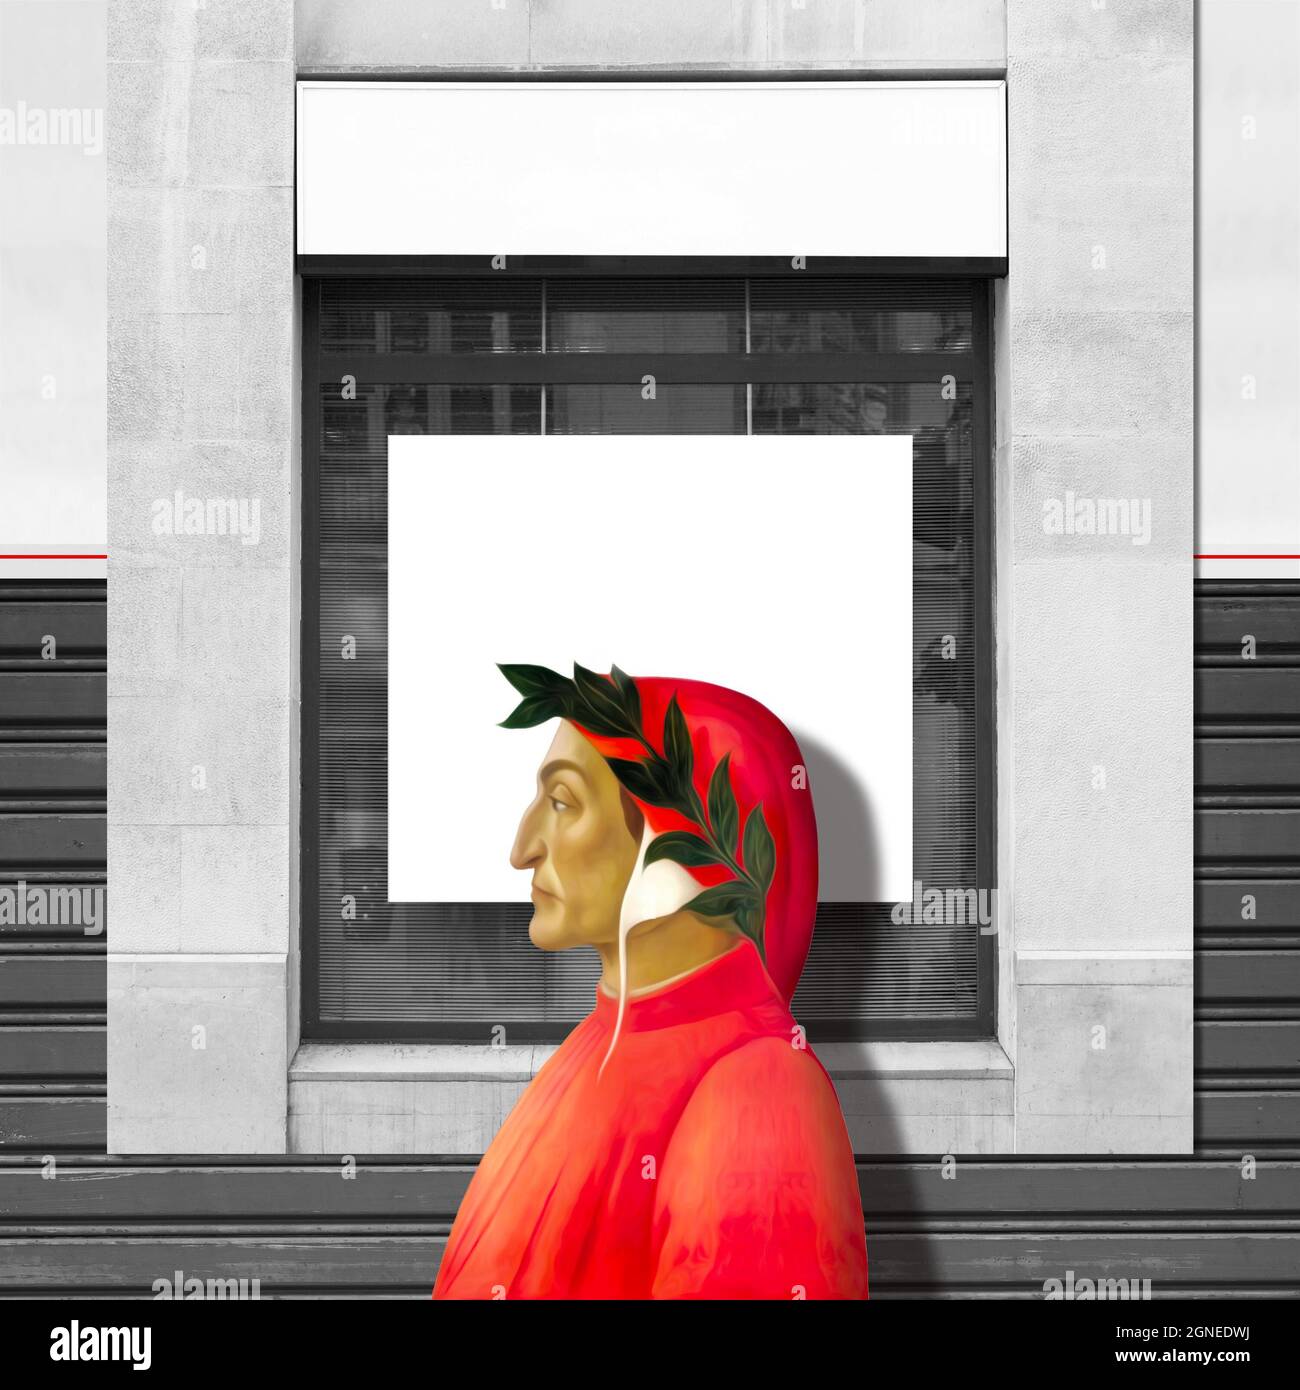 Illustrazione del profilo di Dante Alighieri su finestre e pareti con intemperie Foto Stock